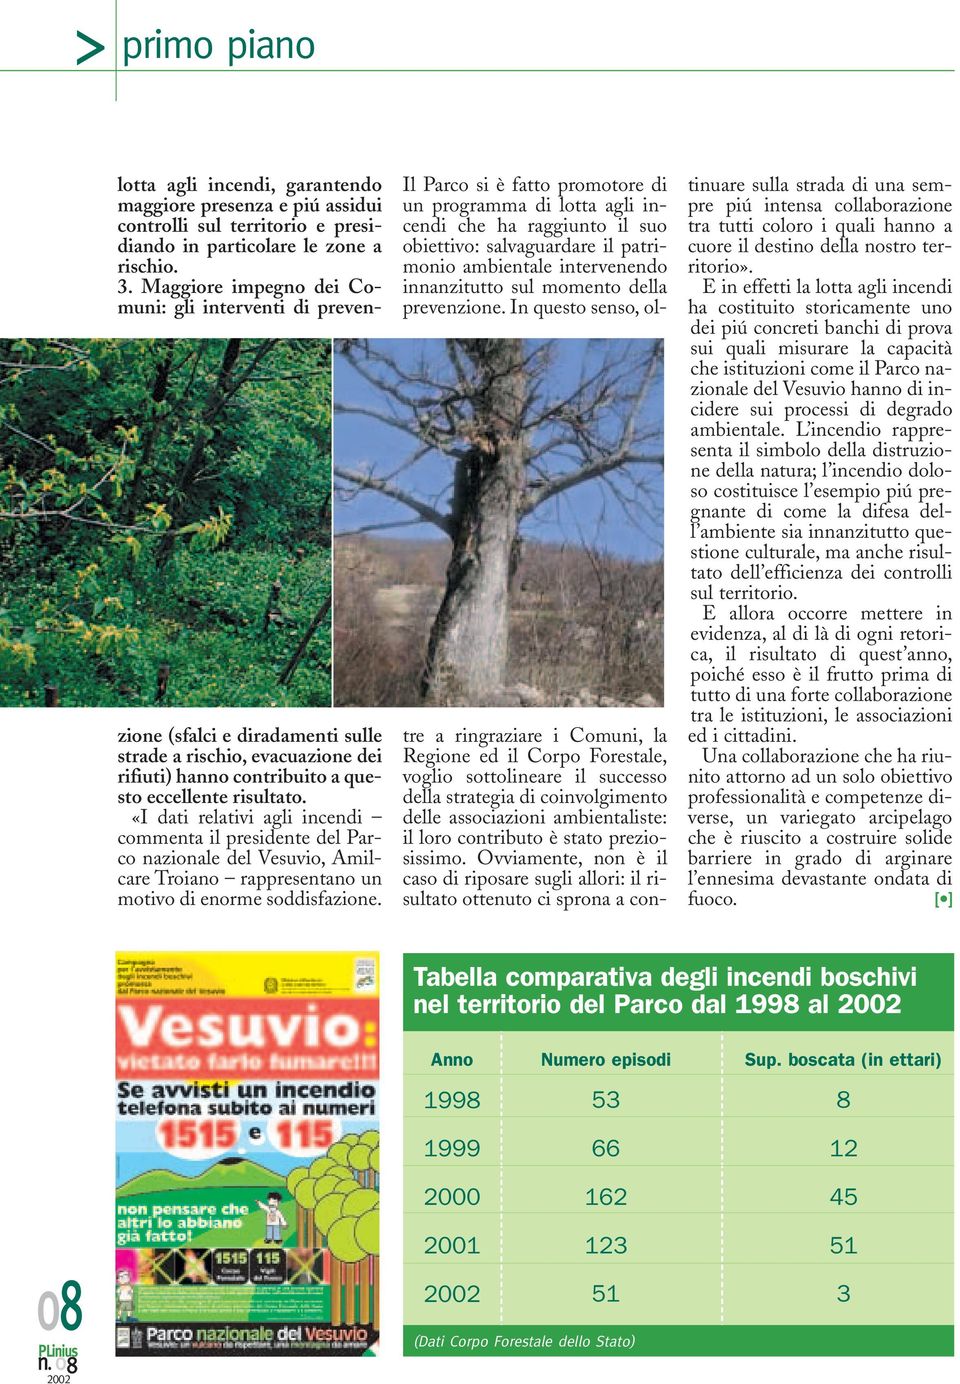 «I dati relativi agli incendi commenta il presidente del Parco nazionale del Vesuvio, Amilcare Troiano rappresentano un motivo di enorme soddisfazione.